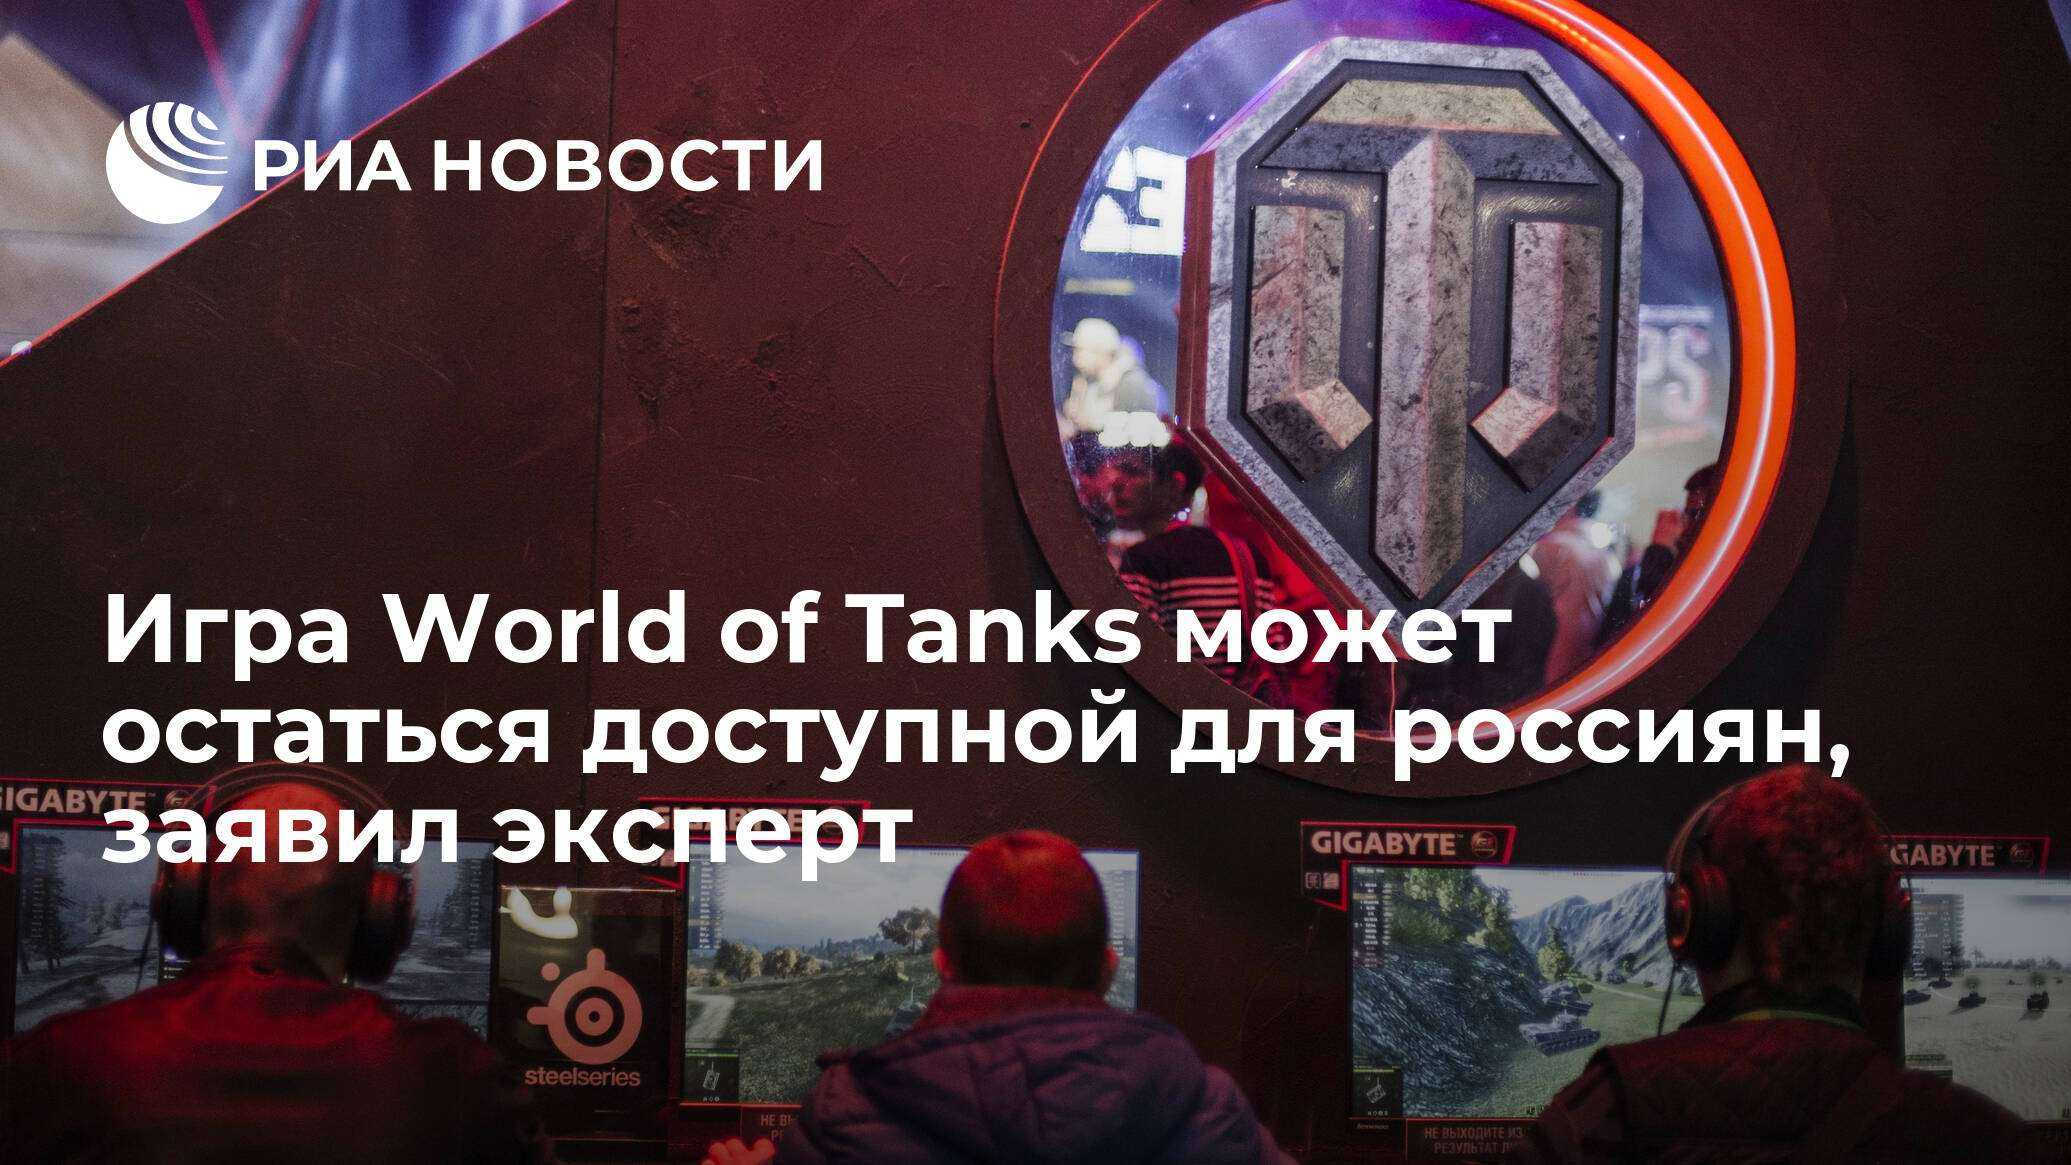 World of tanks в россии теперь в руках lesta studio — стоит ли волноваться? - cq